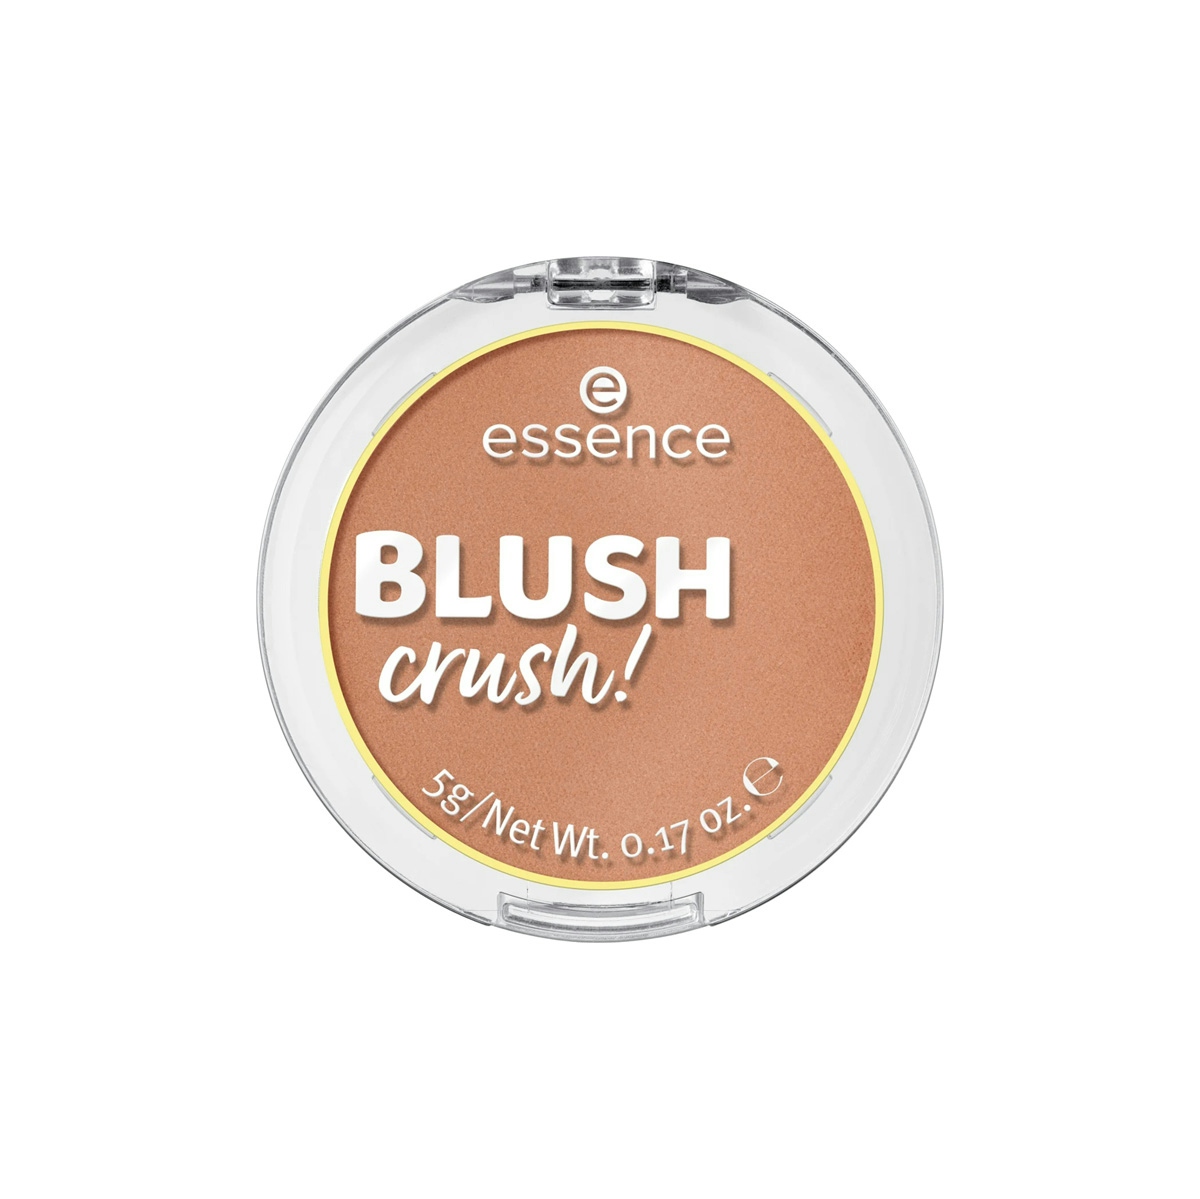 Essence Colorete Blush Crush! 10